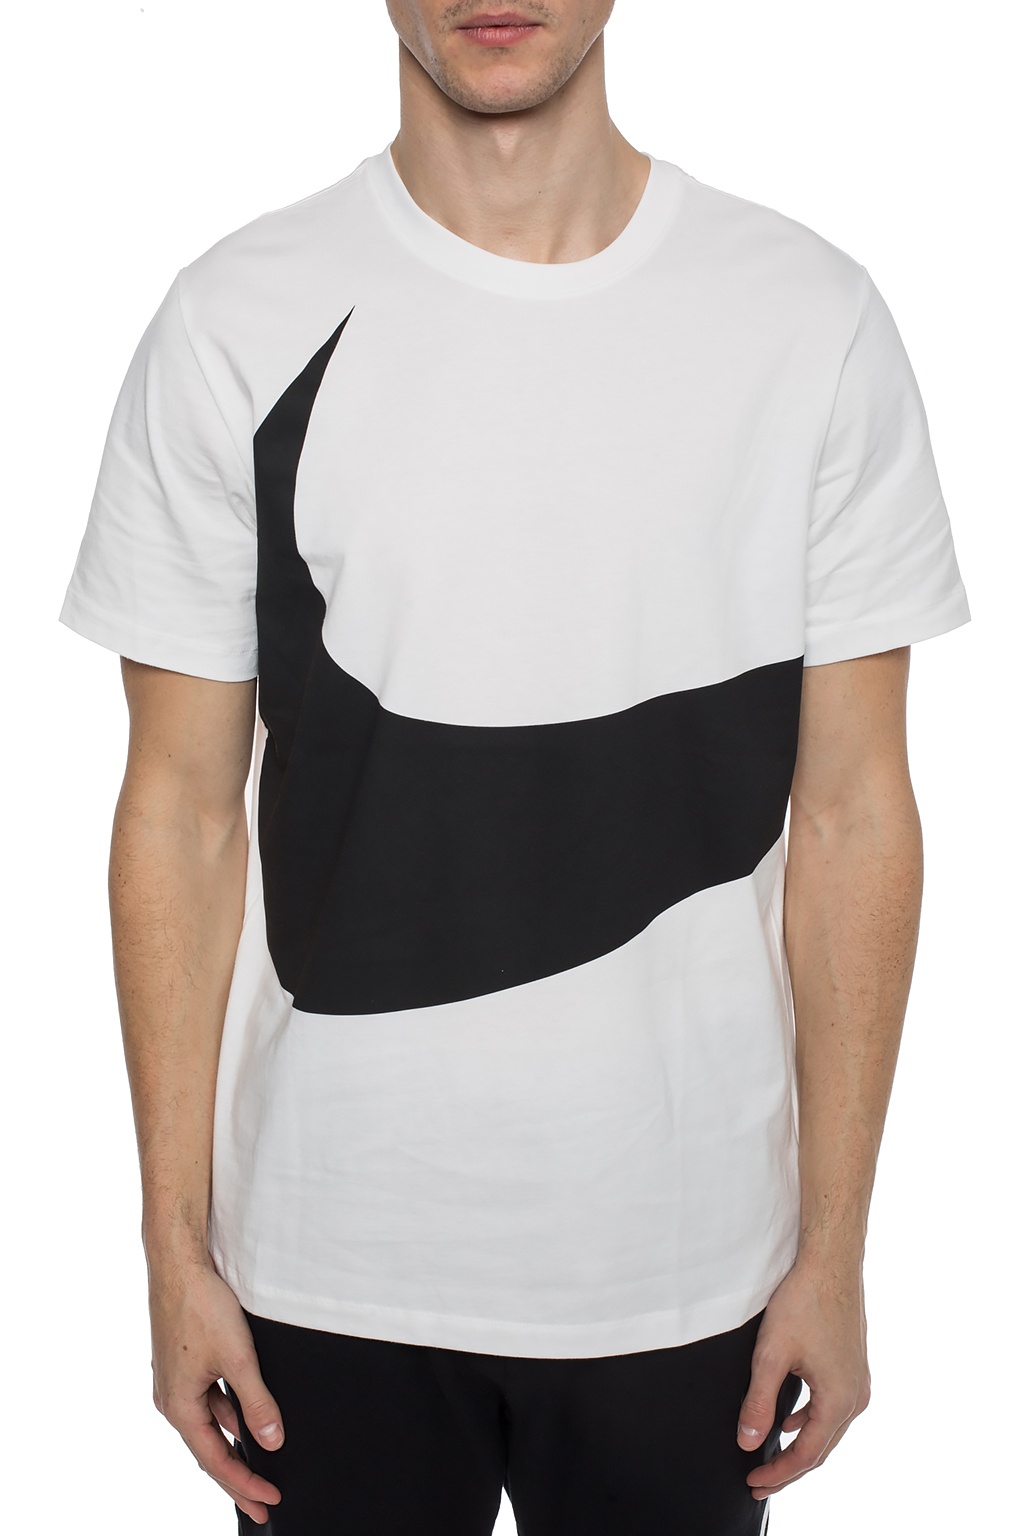 altura doble dinosaurio Printed T-shirt Nike - Vitkac France